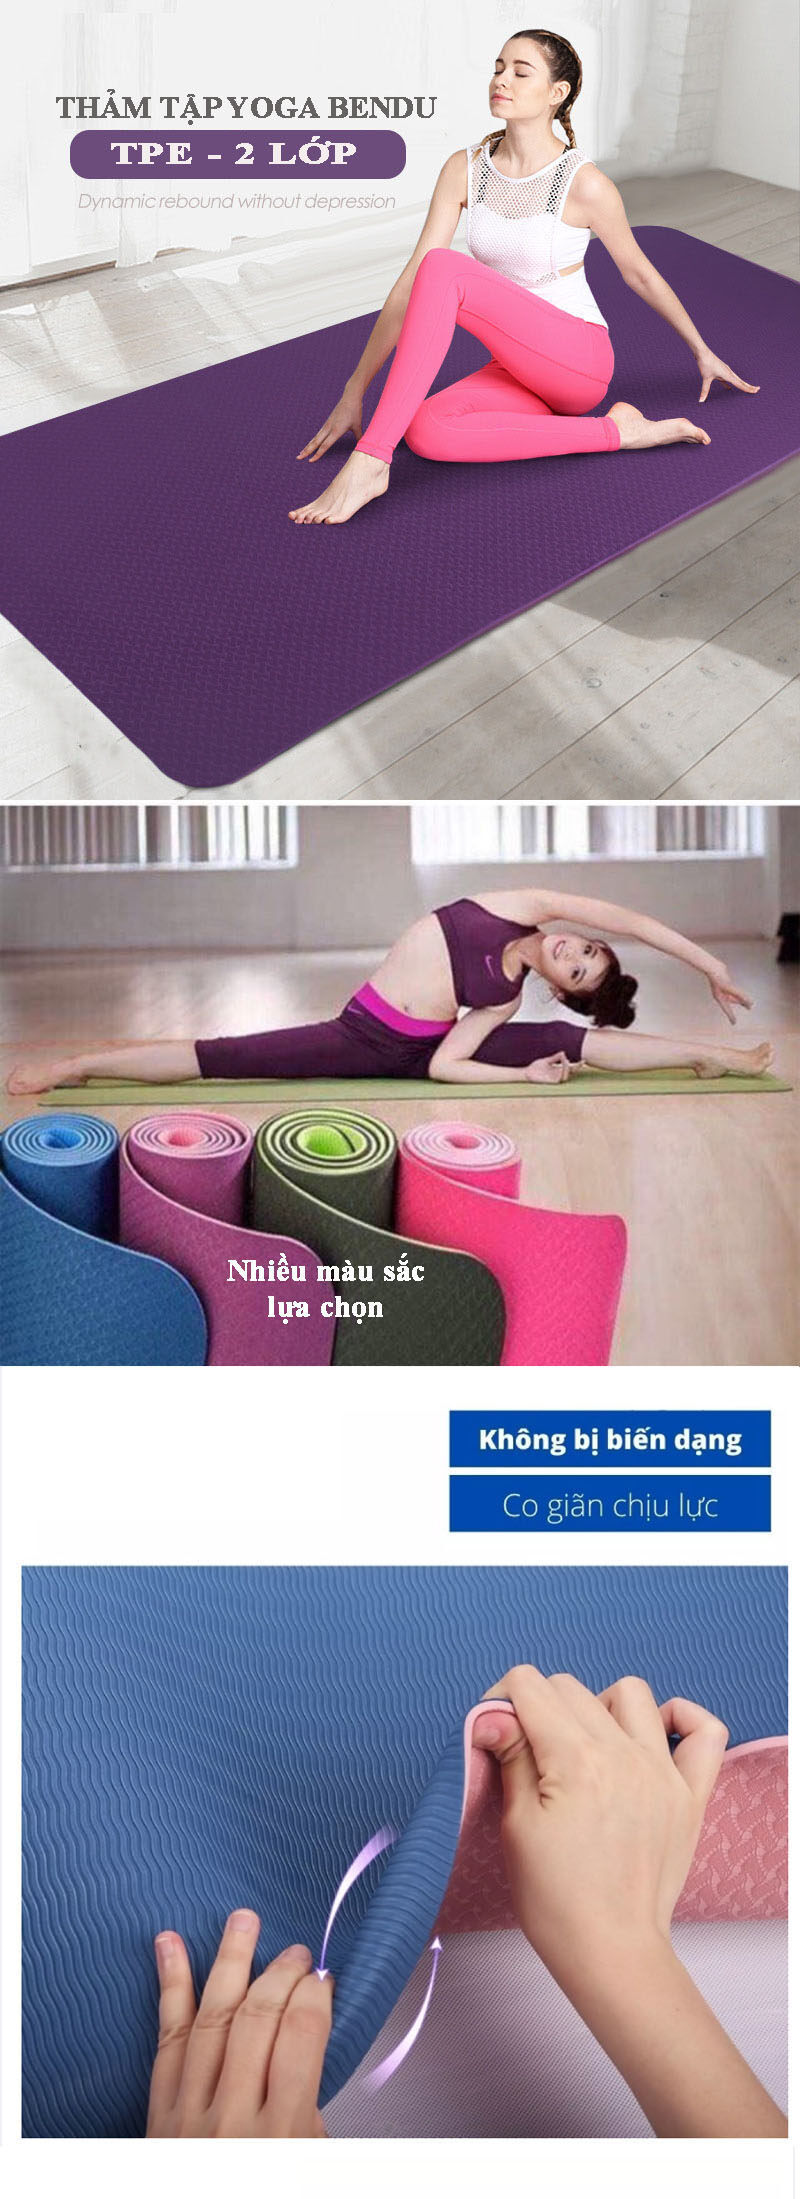 Thảm Yoga YG01 siêu bền loại 0.6cm màu tím kèm túi đựng